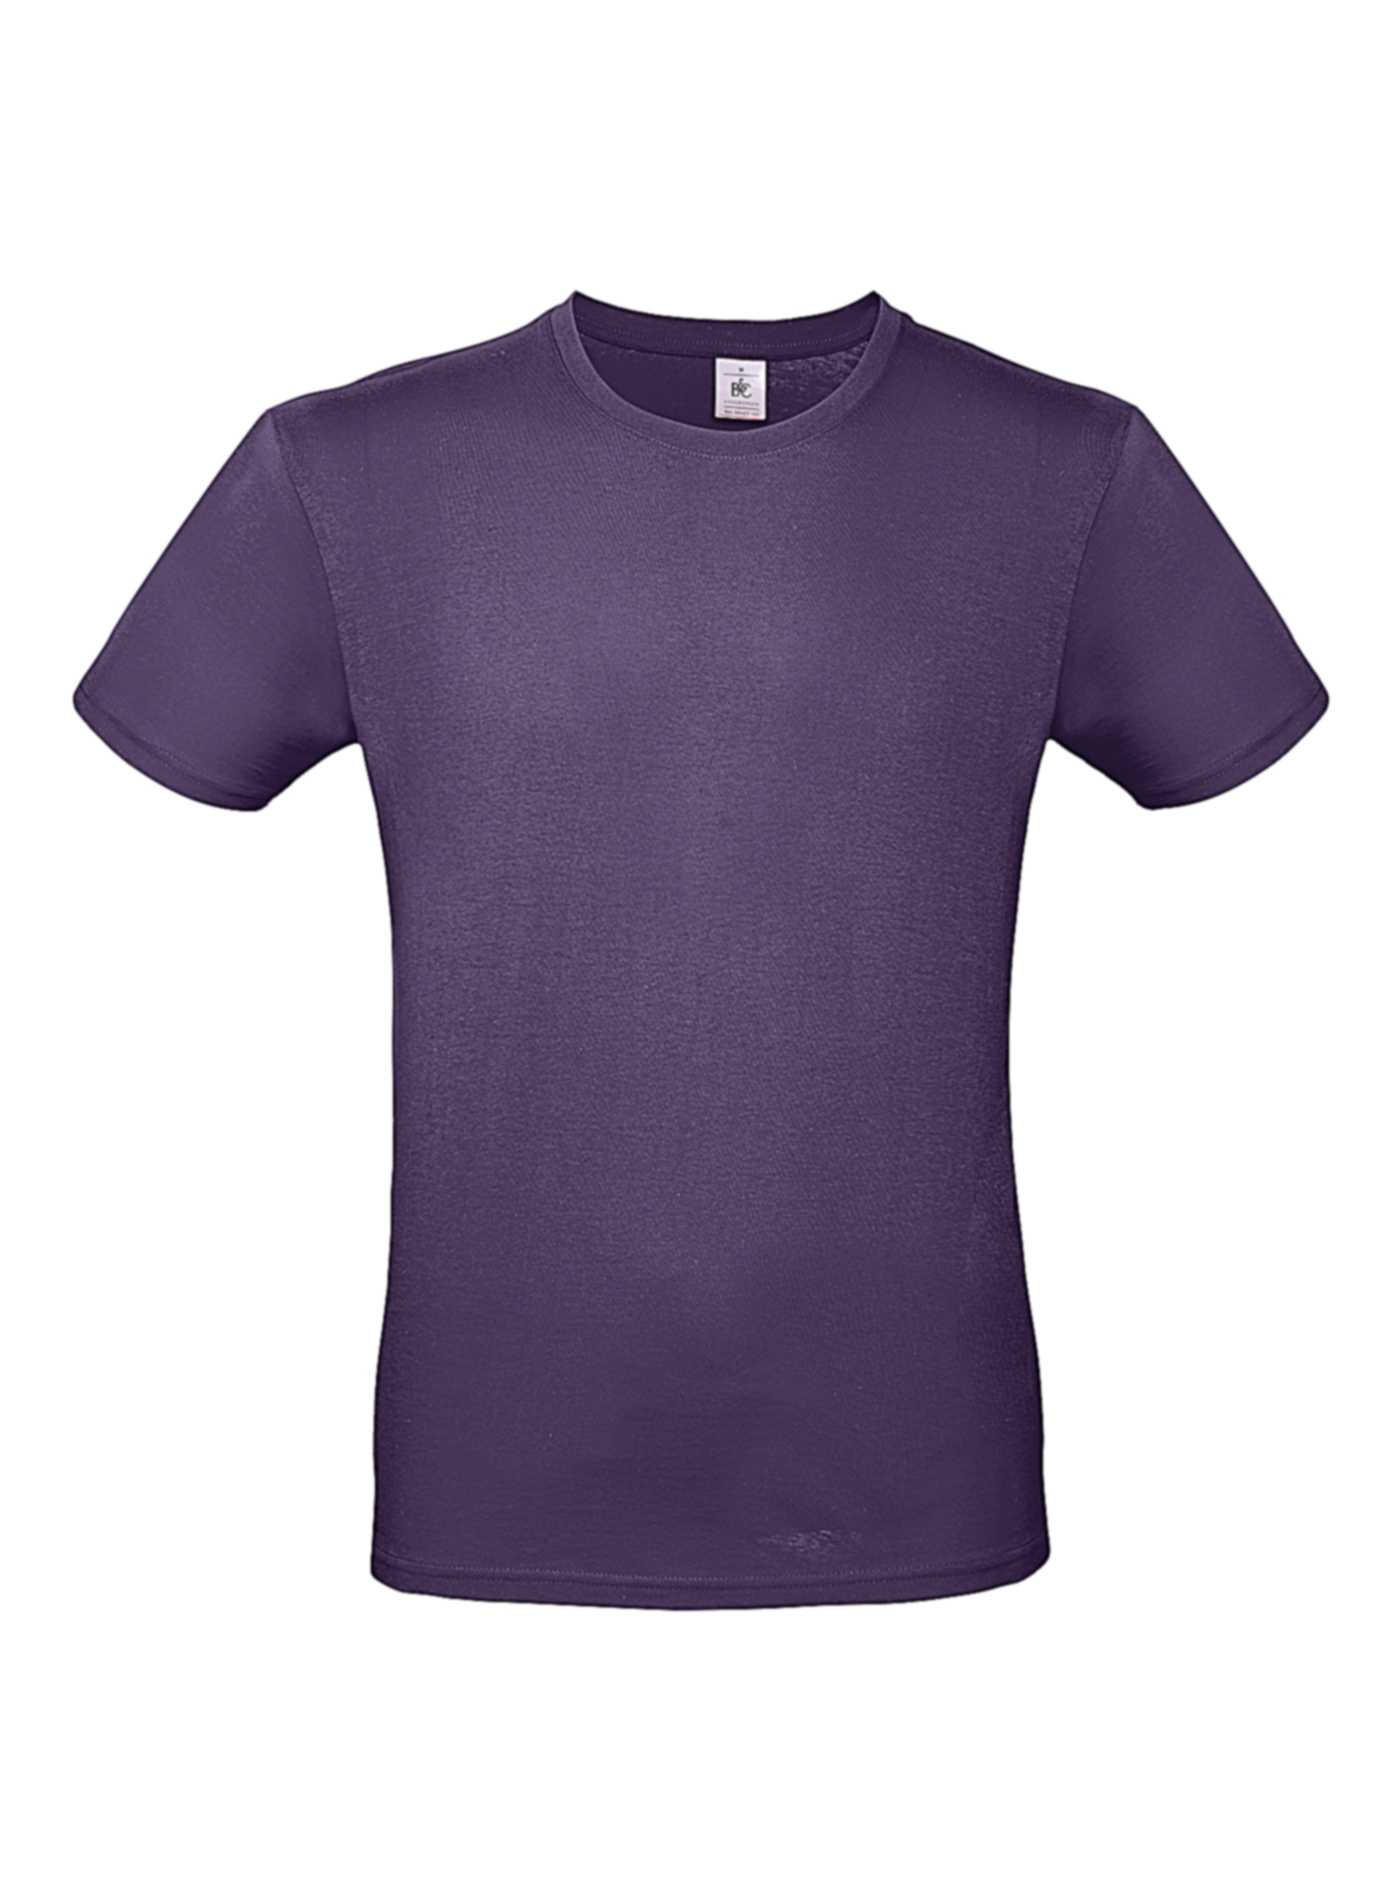 Pánské tričko B&C - fialová 3XL